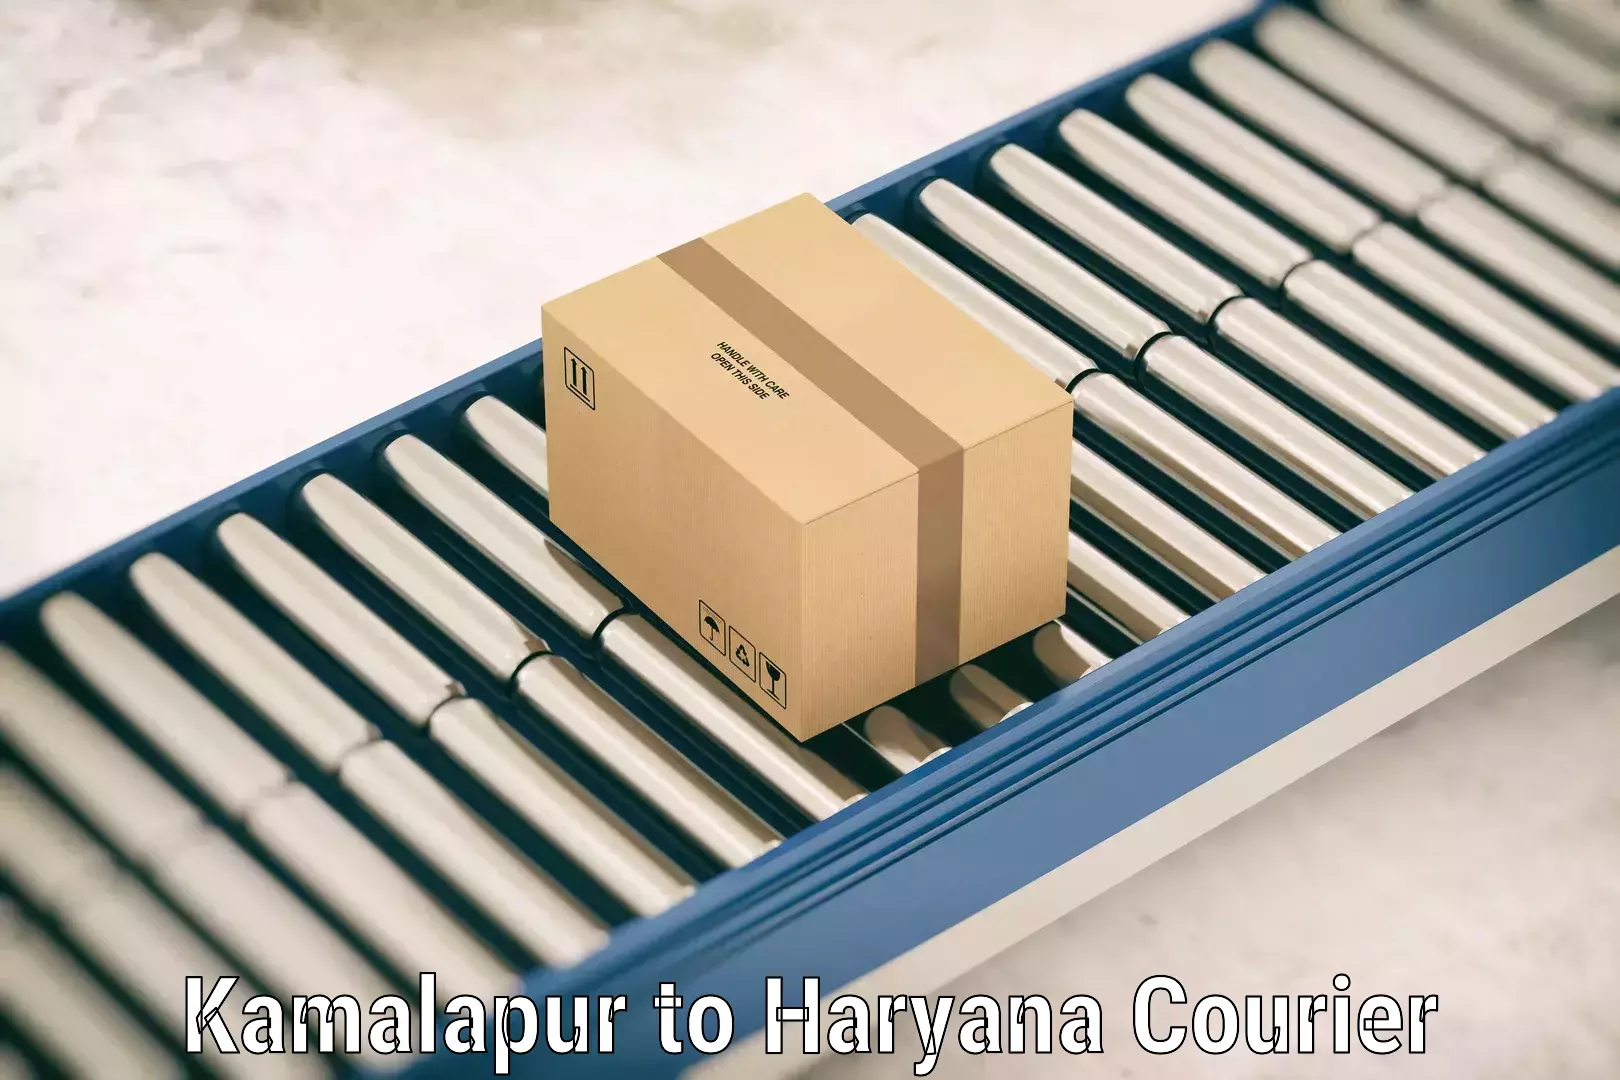 Baggage transport scheduler Kamalapur to Haryana